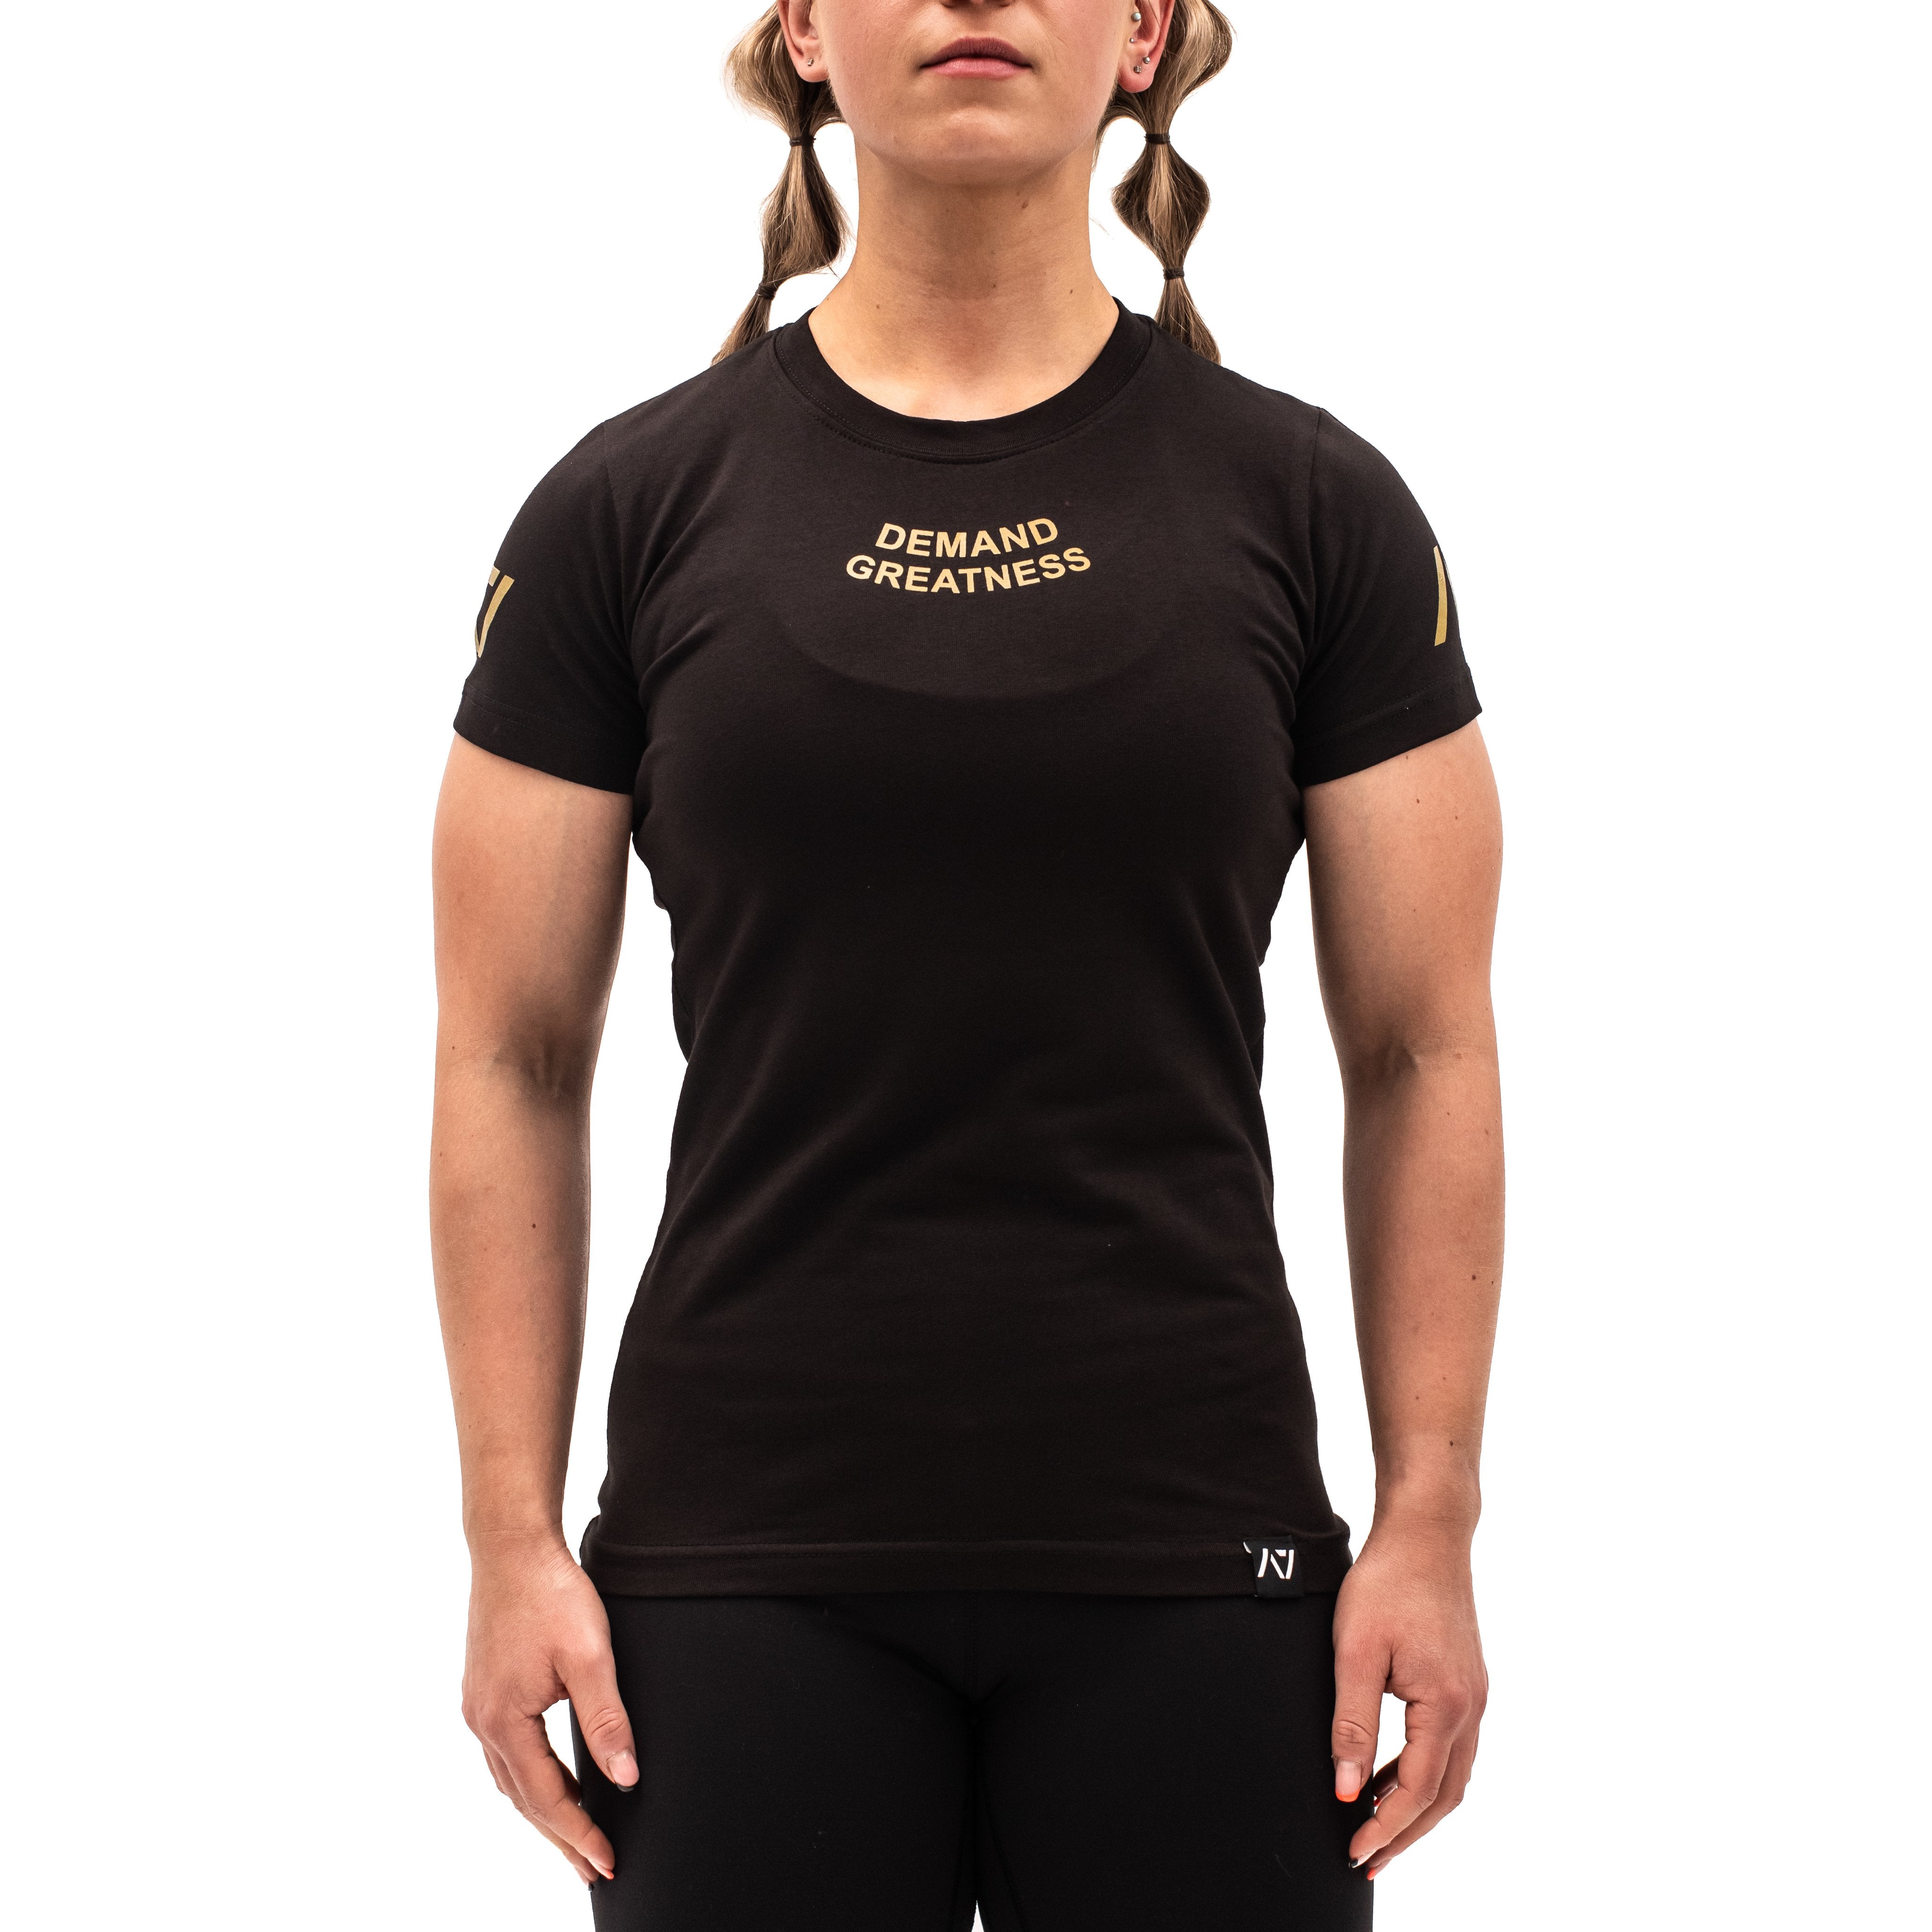 Gold Standard Women's Meet Shirt - IPF Approved